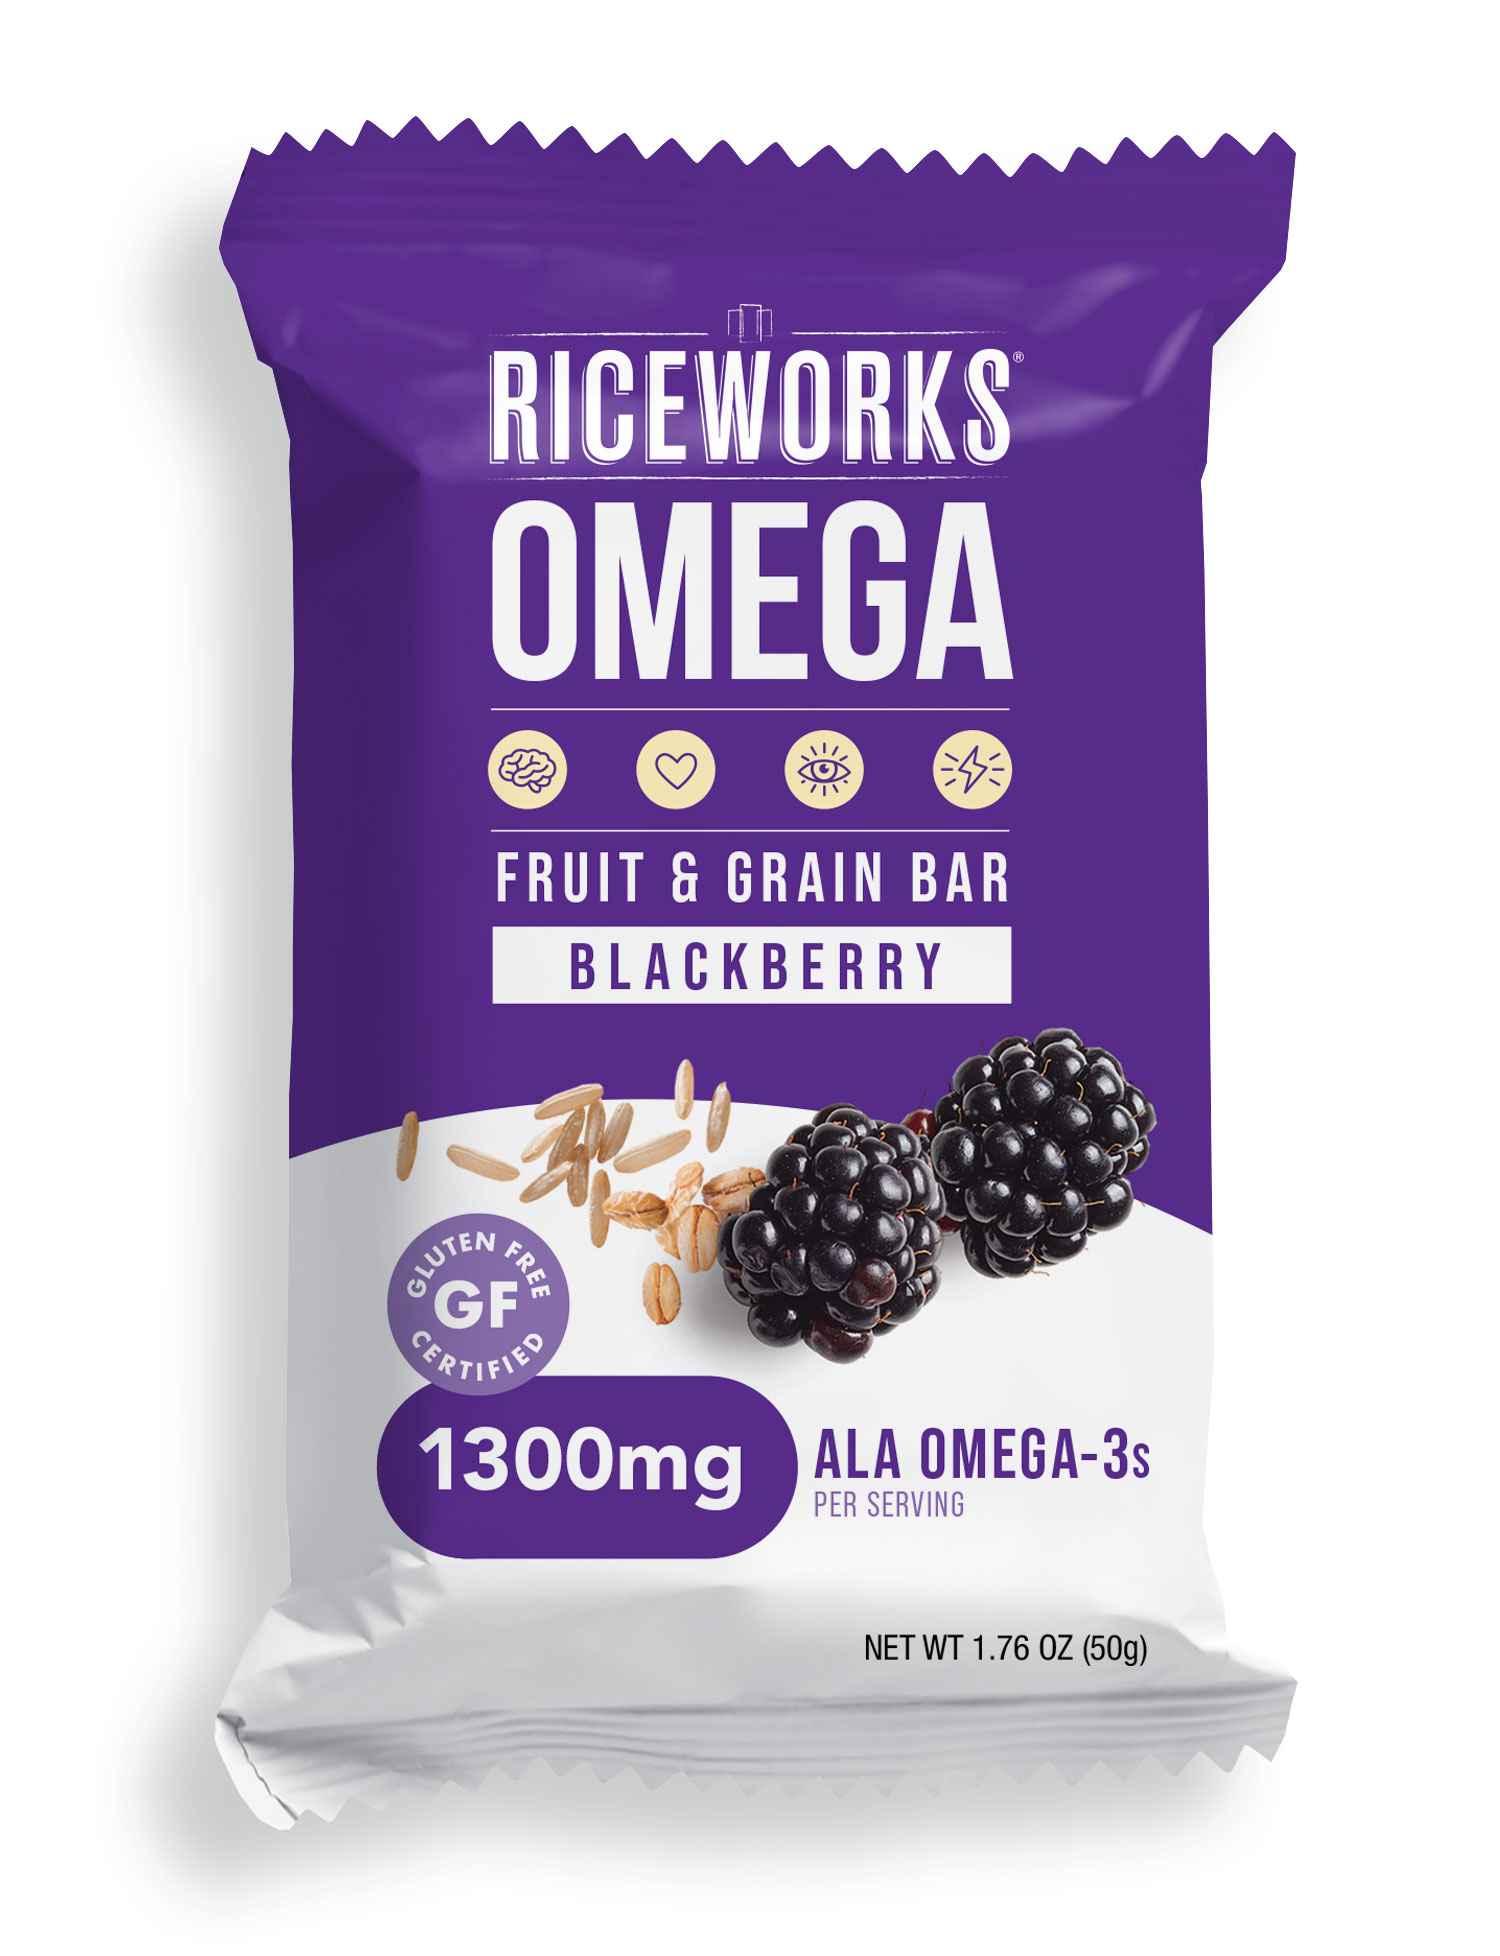 Riceworks Omega Blackberry Baked Multigrain Omega-3 Fruit Bar